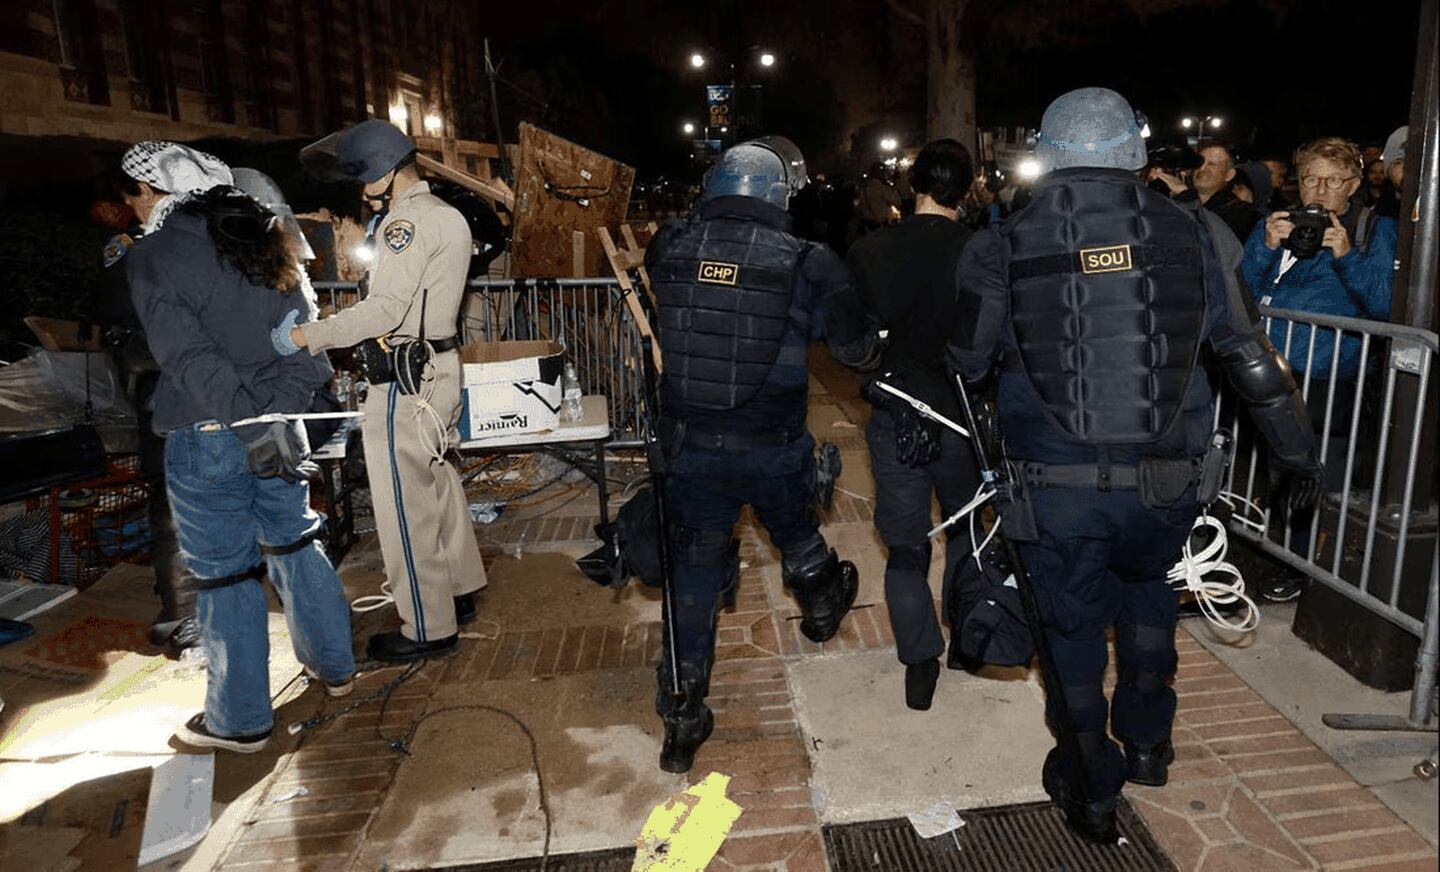 La importante presencia policial en torno a UCLA tiene lugar después que las fuerzas de seguridad fueran criticadas por intervenir tardíamente ante los violentos choques del martes por la noche. Foto: AFP